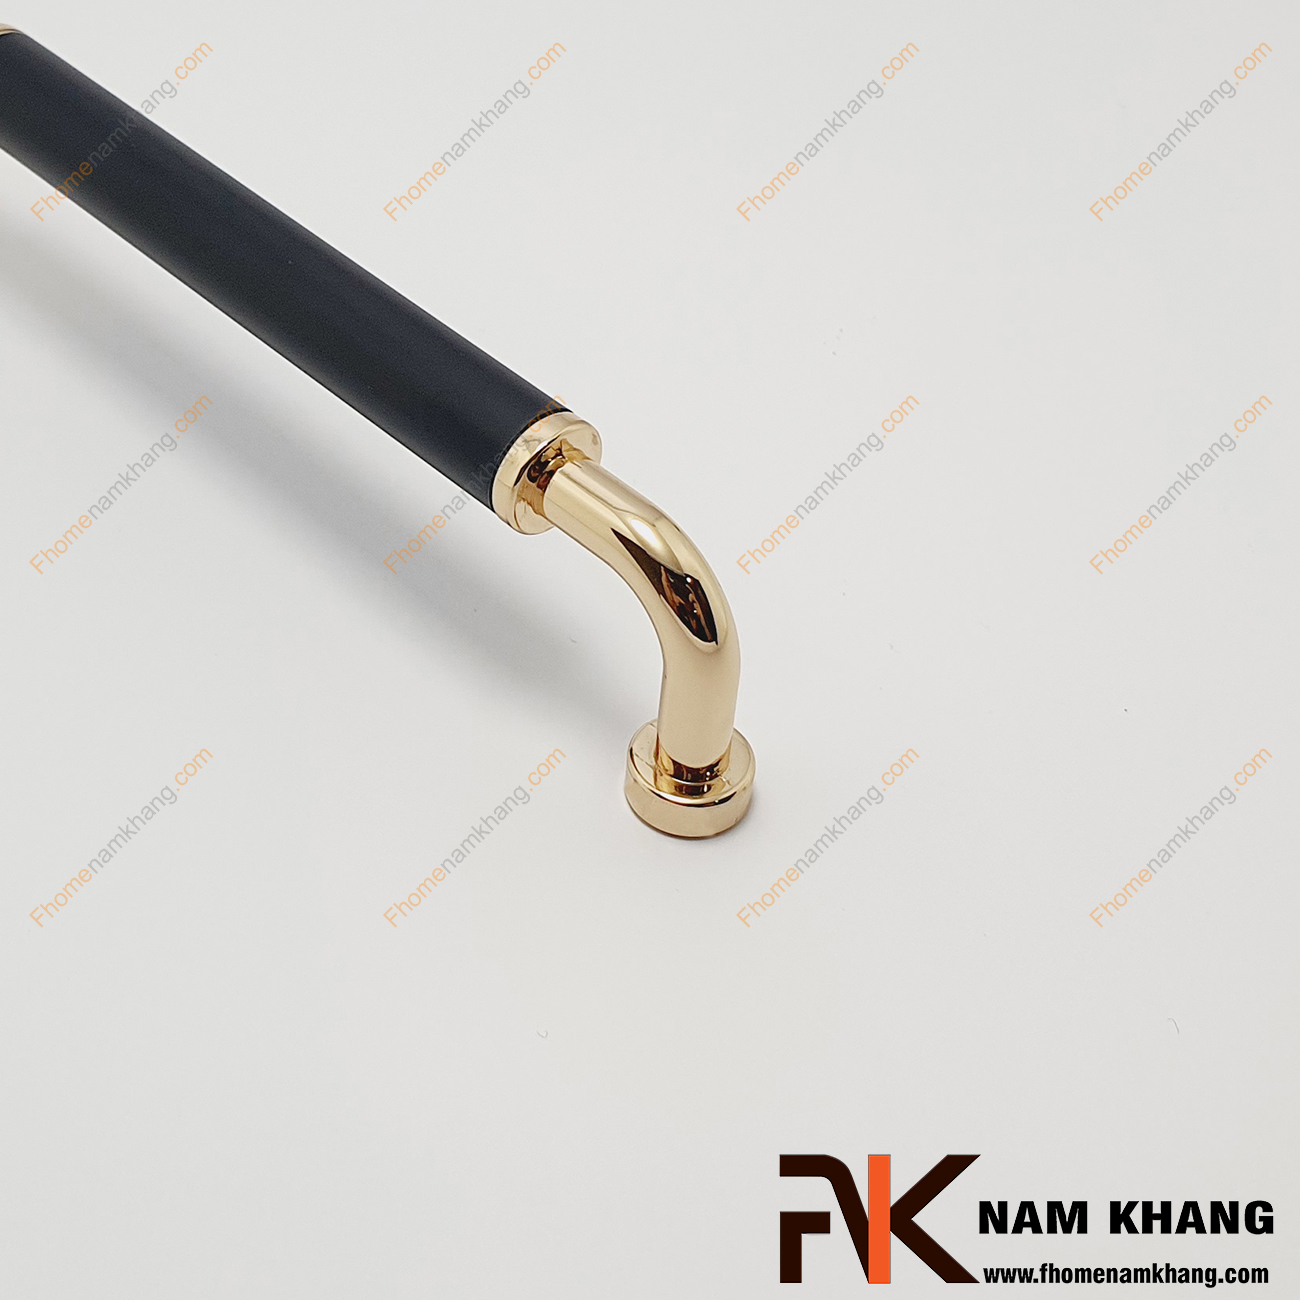 Tay nắm tủ phối hợp đen vàng NK338-DV là một dạng tay nắm có thiết kế rất cổ, rất độc đáo. Đây là dạng tay nắm phối phần tay dạng tròn trơn và đế vàng bóng ấn tượng.